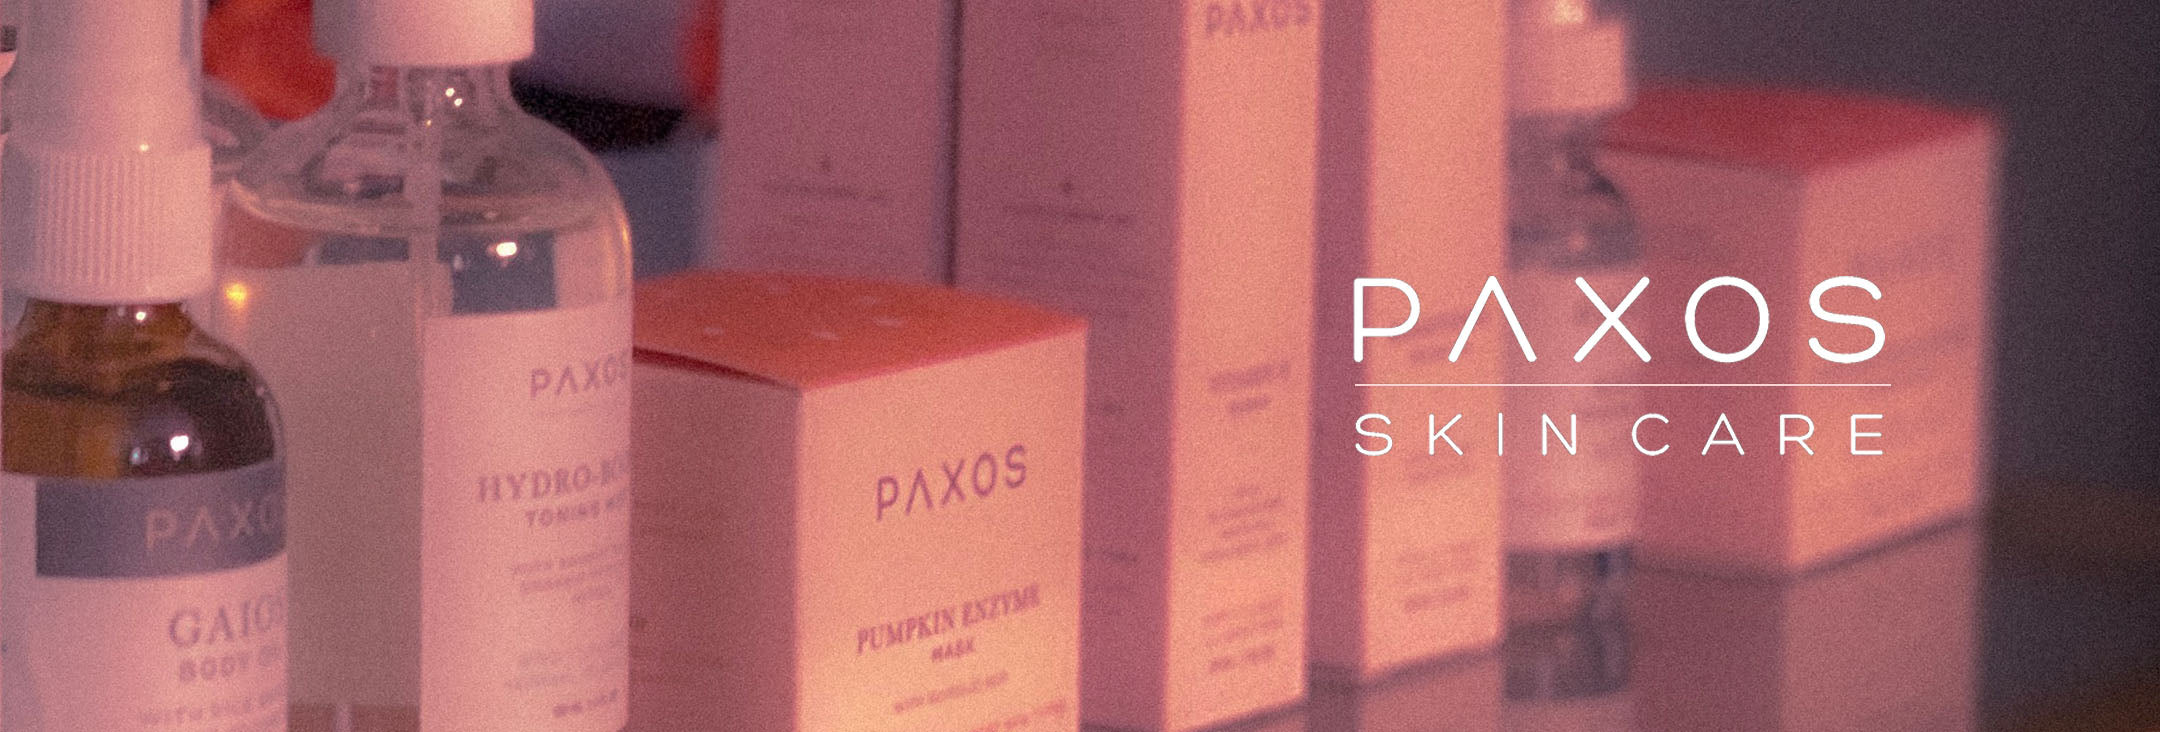 Paxos Skincare